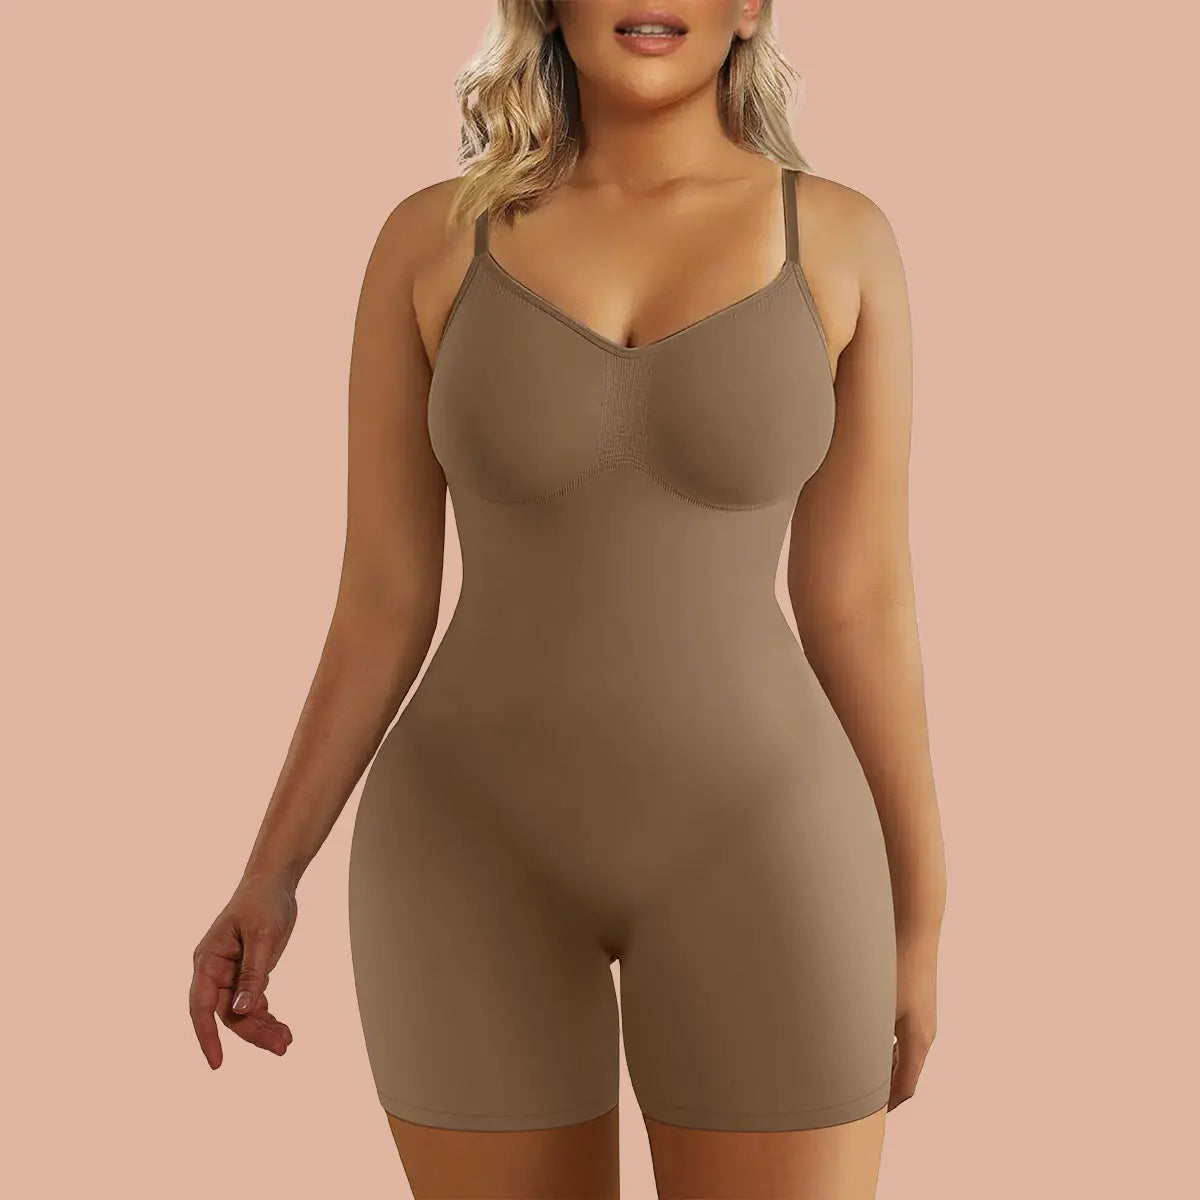 SHAPERX Shapewear for Women Tummy Control Fajas Colombianas Body Shape